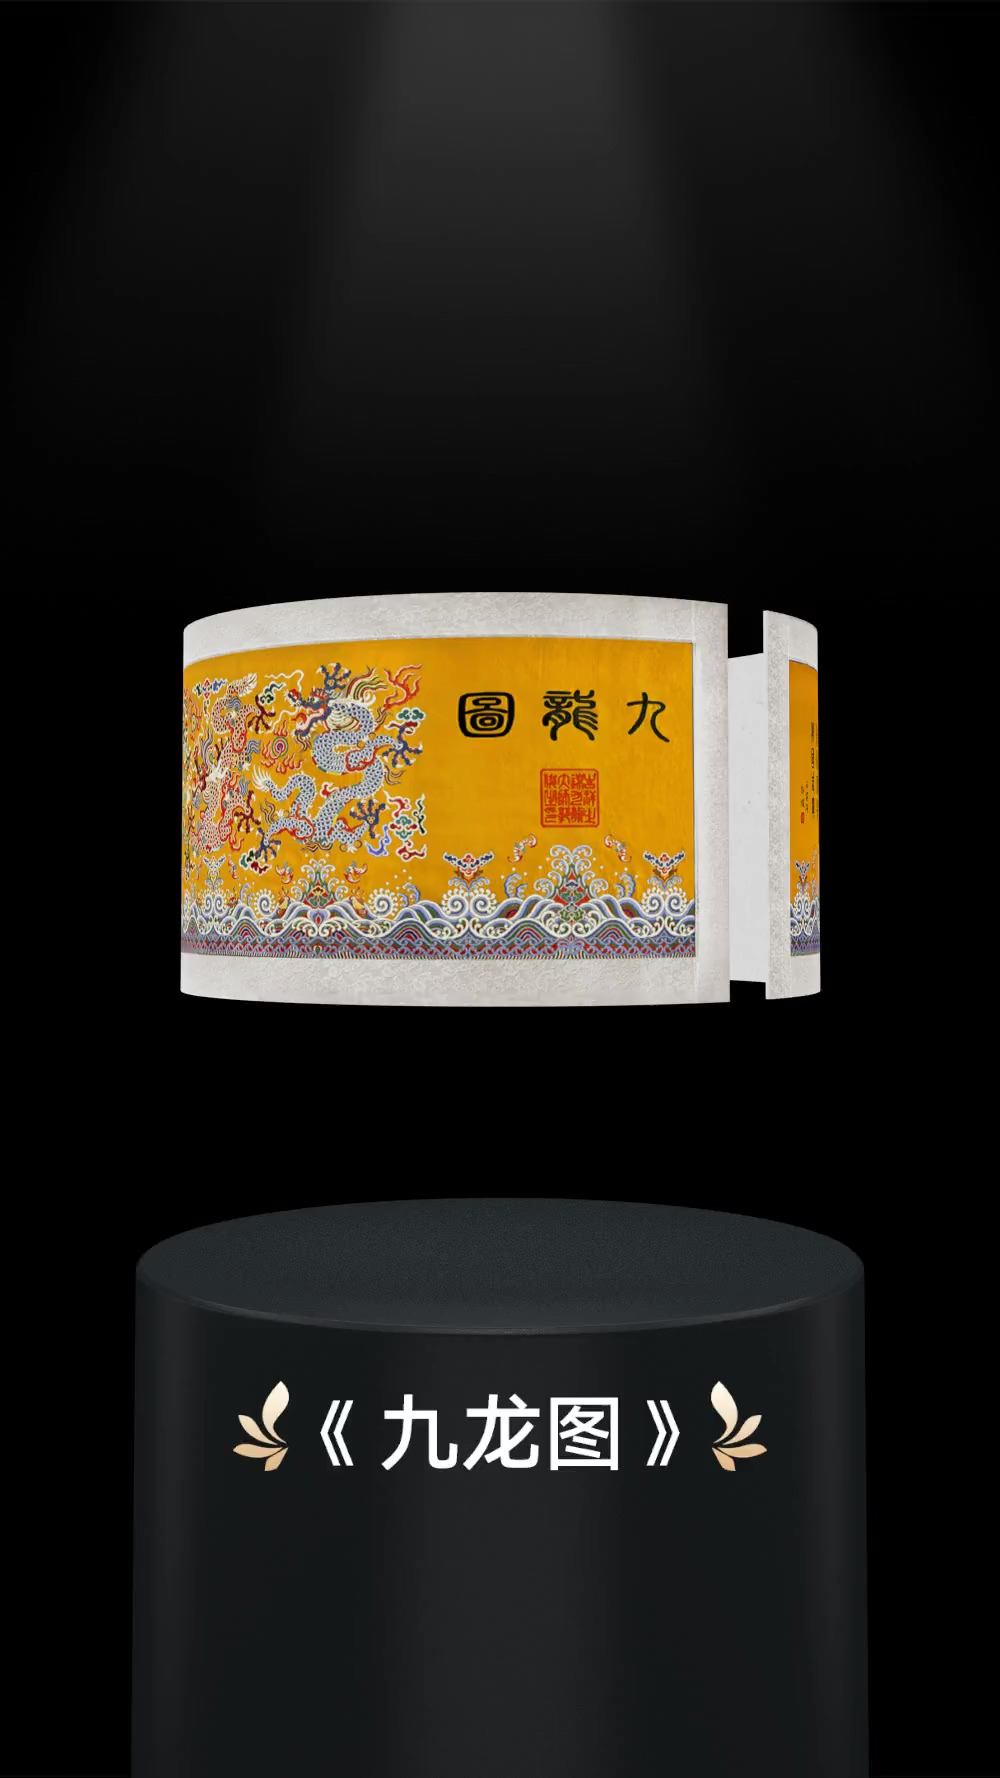 广天与蚂蚁鲸探平台合作，《南京云锦·九龙图》数字藏品即将上线发售！